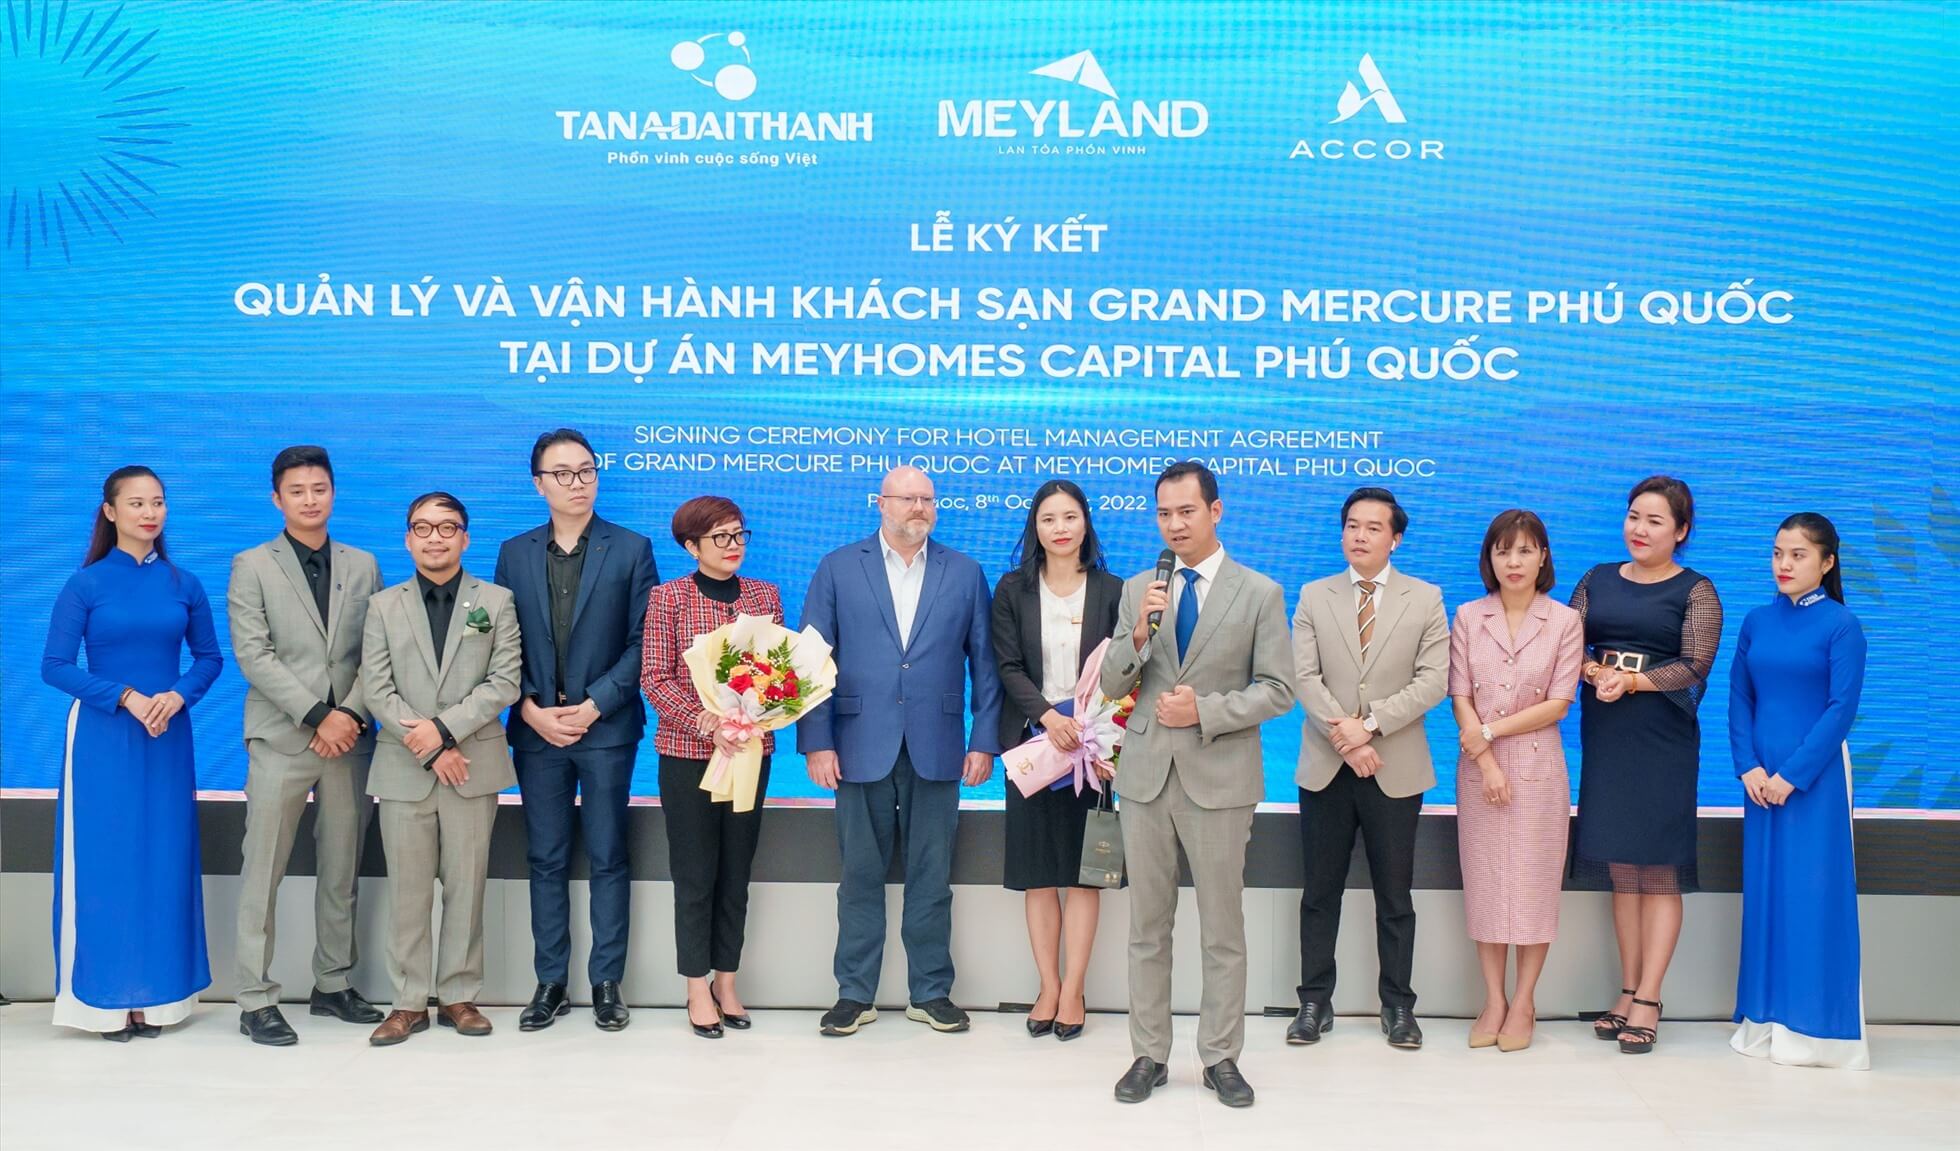 Ông Phạm Minh Đức, Phó TGĐ Tập đoàn Tân Á Đại Thành phát biểu tại sự kiện ký kết vận hành Grand Mercure Phú Quốc.